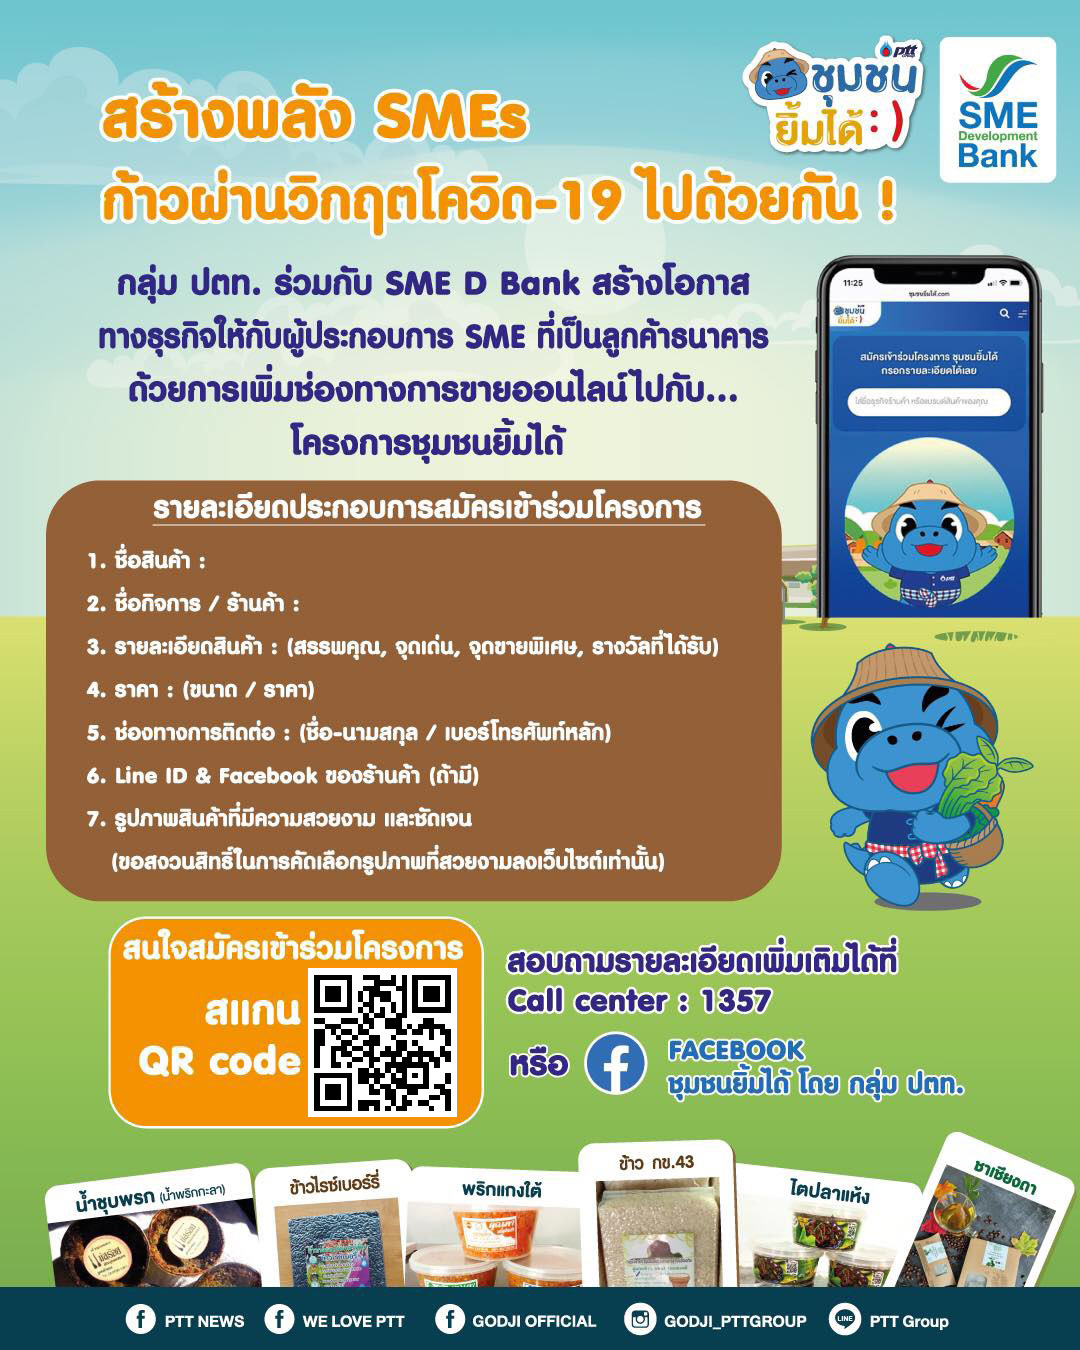 SME D Bank จับมือ ปตท. สร้างโอกาสเอสเอ็มอีไทยขยายช่องทางตลาดฟรี  “www.ชุมชนยิ้มได้.com”